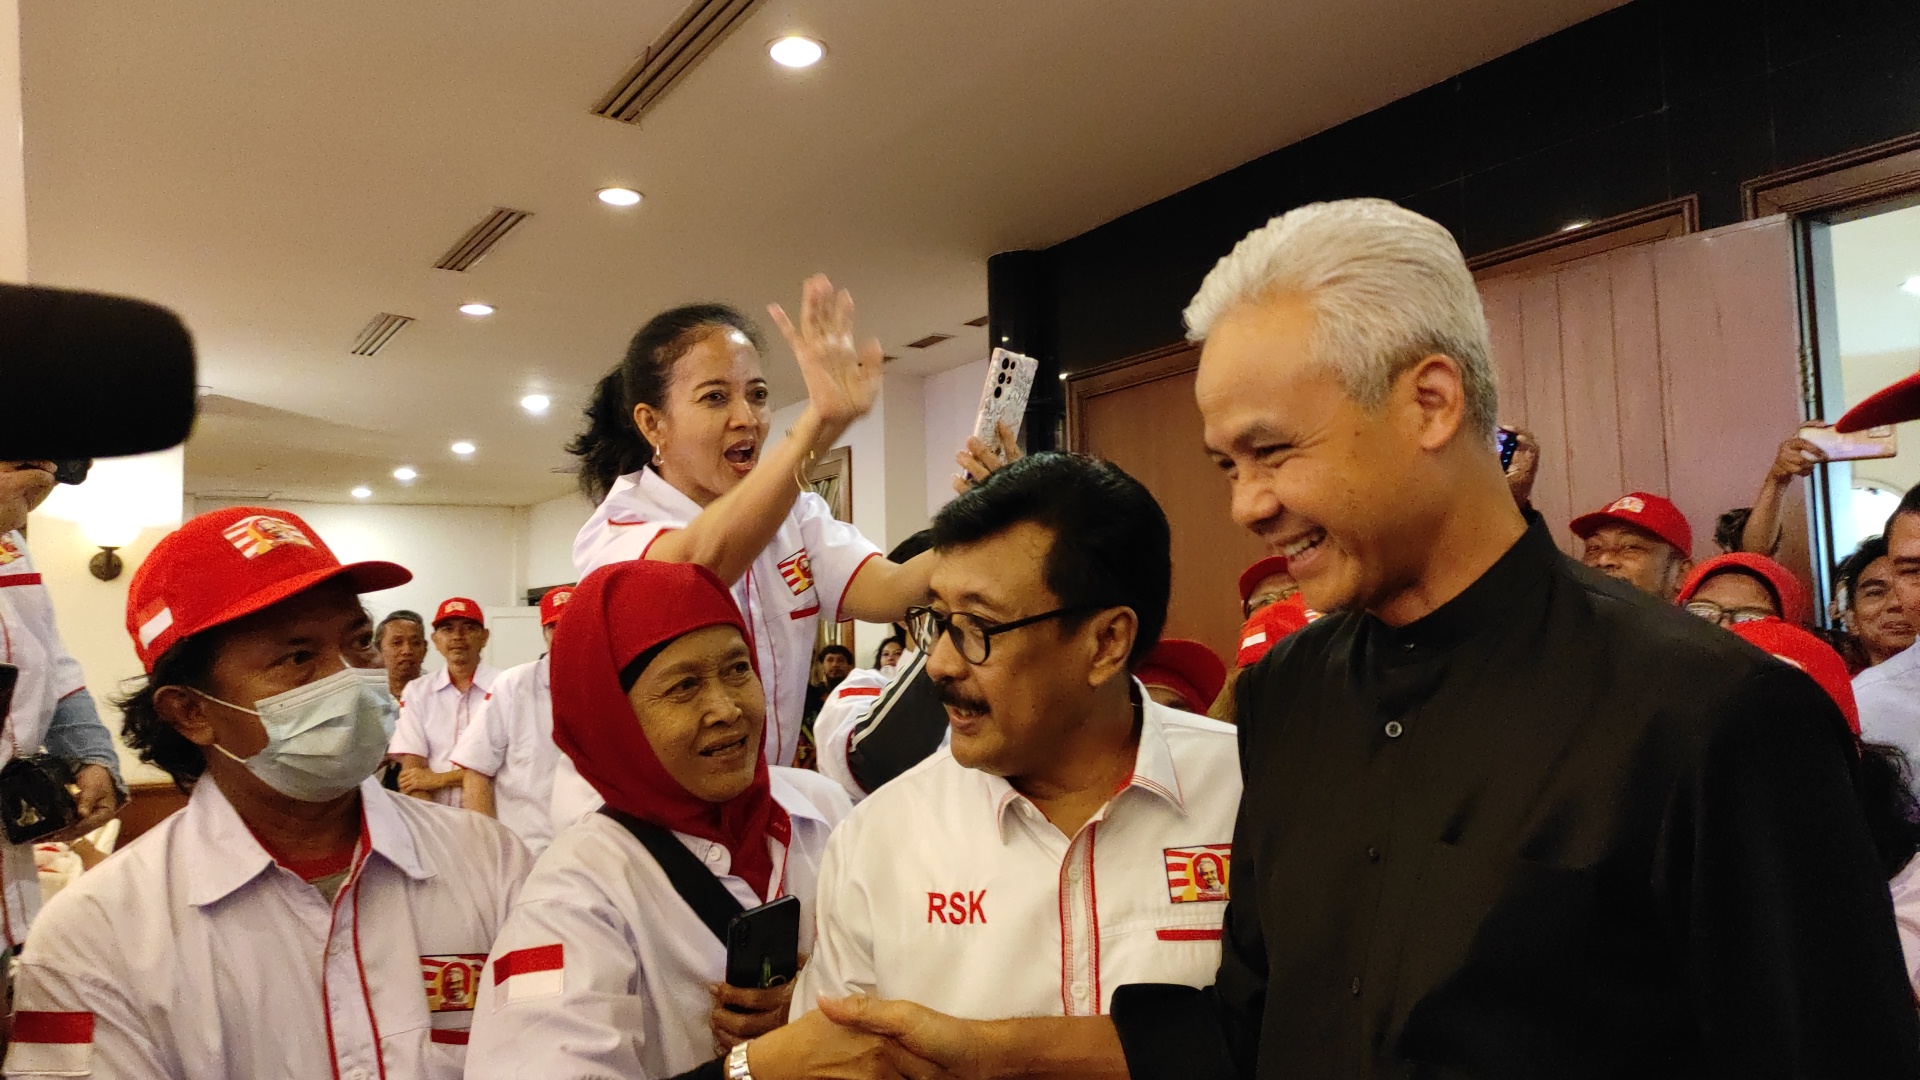 Relawan Gapura Nusantara Yakin Ganjar Pranowo Mampu Pertahankan Empat Konsensus Dasar Bernegara